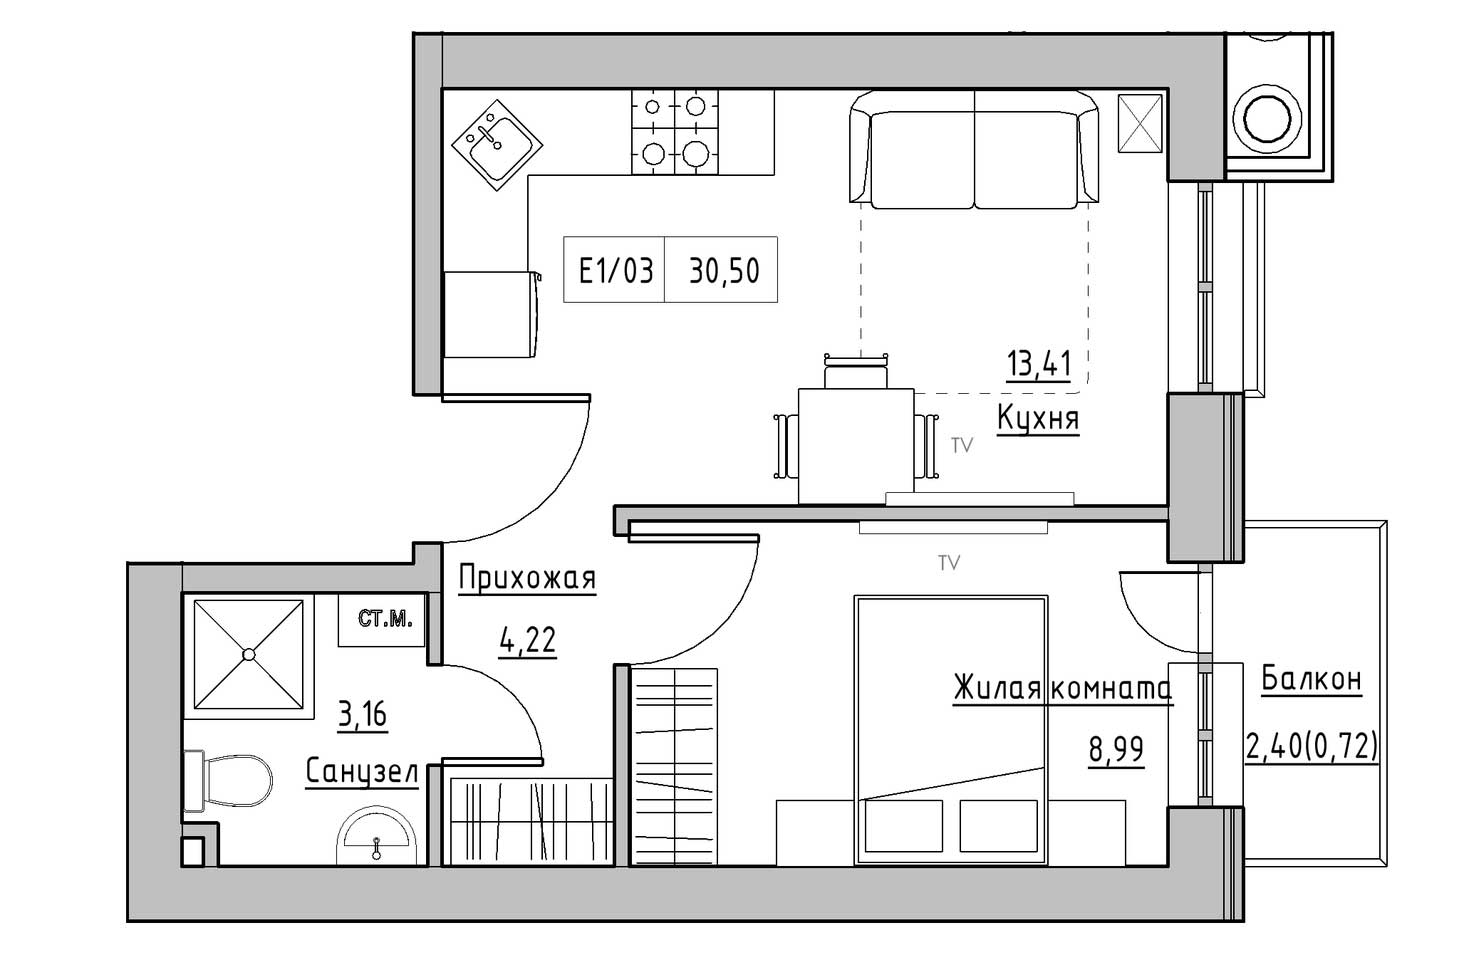 Планування 1-к квартира площею 30.5м2, KS-009-04/0002.